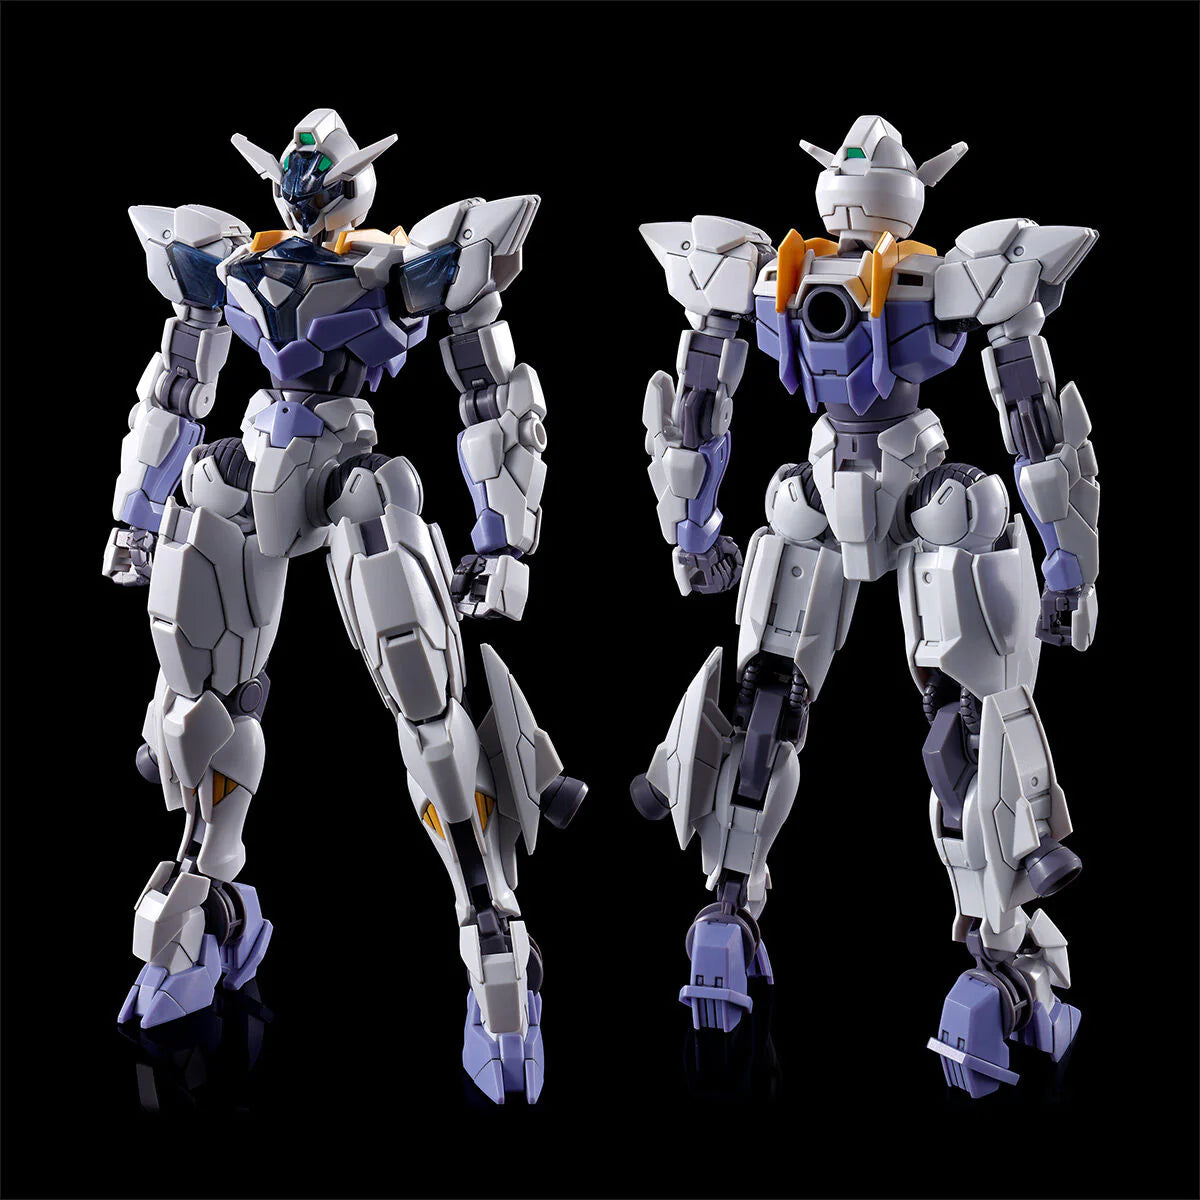 GUNDAM - HG 1/144 - Gundam Lfrith Jiu - Model Kit